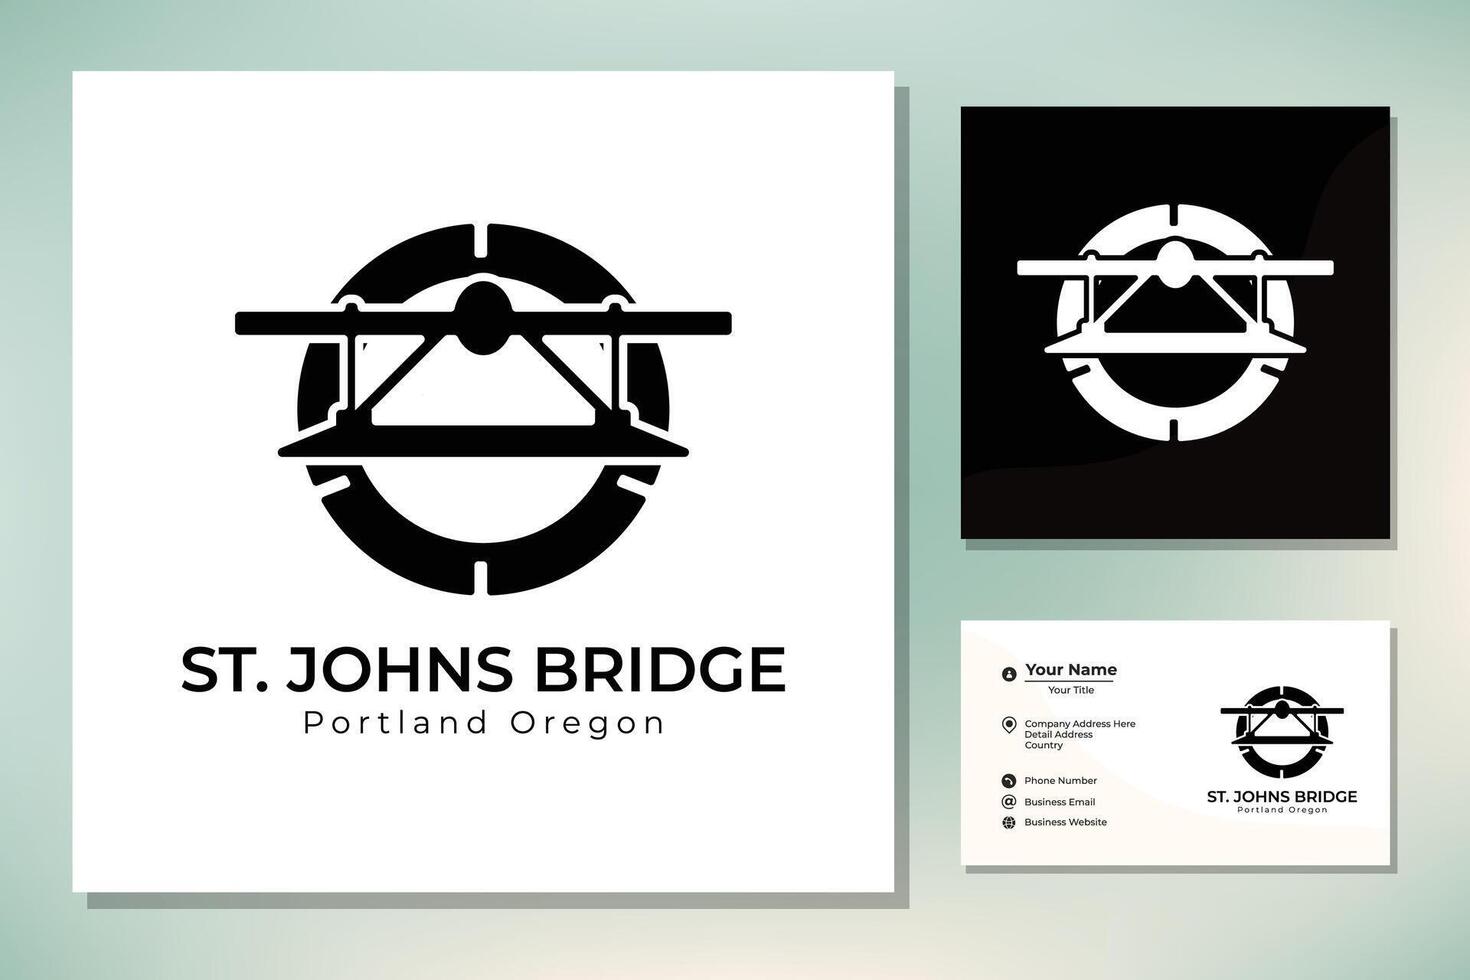 silueta de S t. johns suspensión puente Portland Oregón edificio punto de referencia logo vector